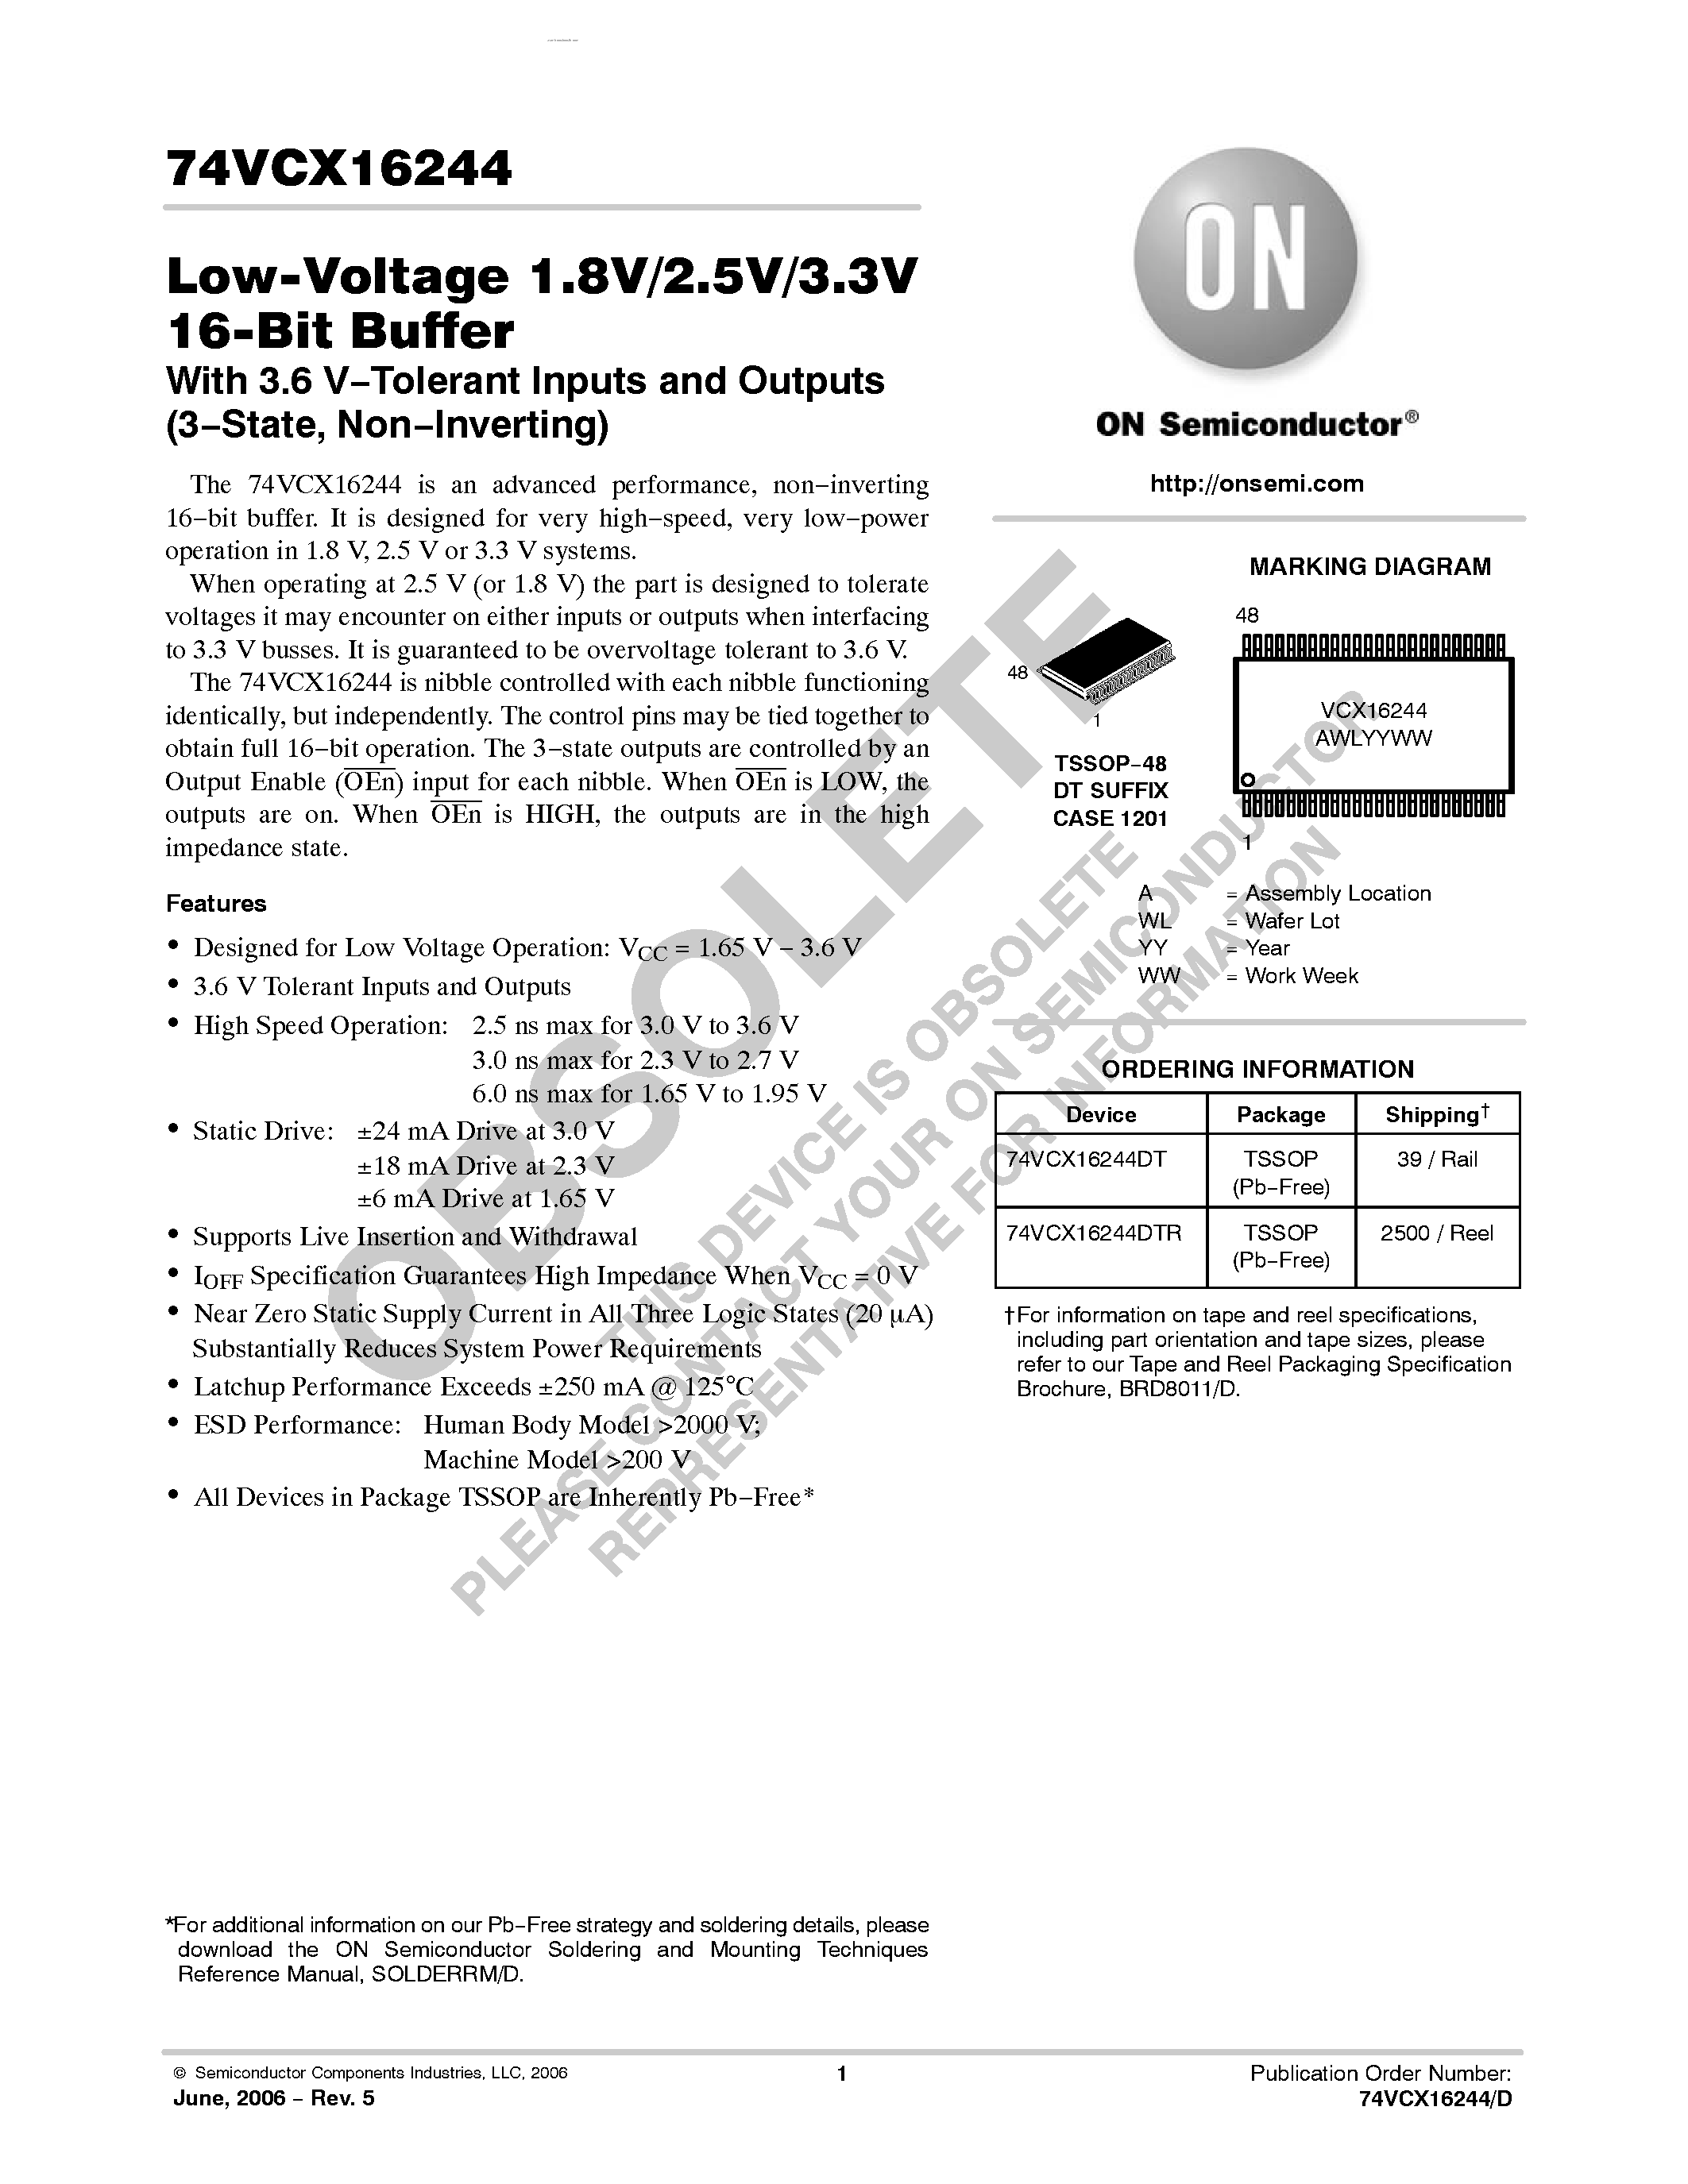 Datasheet 74VCX16244 - Low-Voltage 1.8V/2.5V/3.3V 16-Bit Buffer page 1